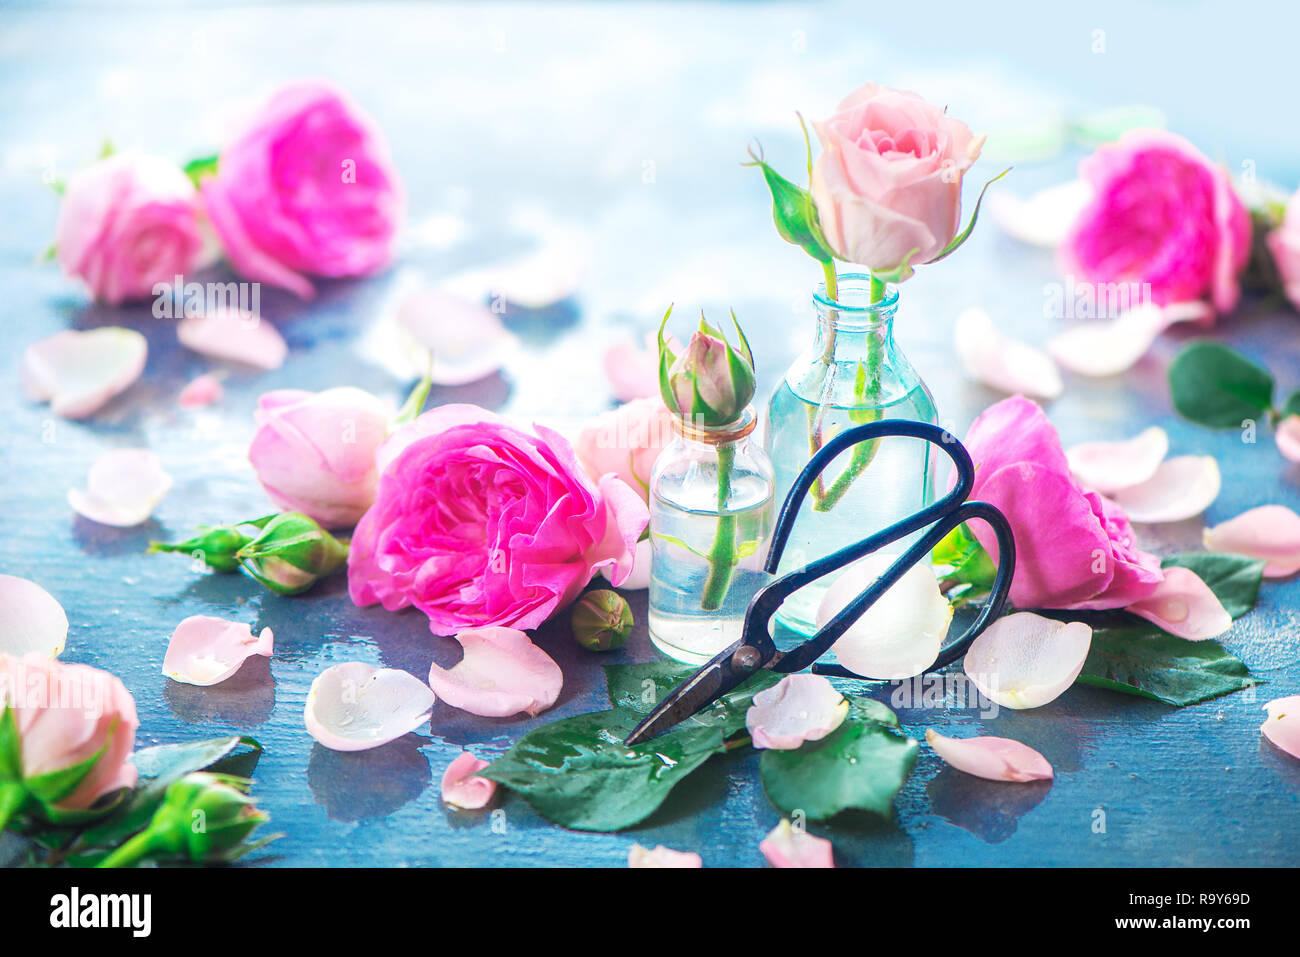 Rosa Rosen in kleinen Glasflaschen mit Chinesischen Garten Schere auf einen neutralen grauen Hintergrund mit kopieren. Frühling im Garten arbeiten Konzept Stockfoto